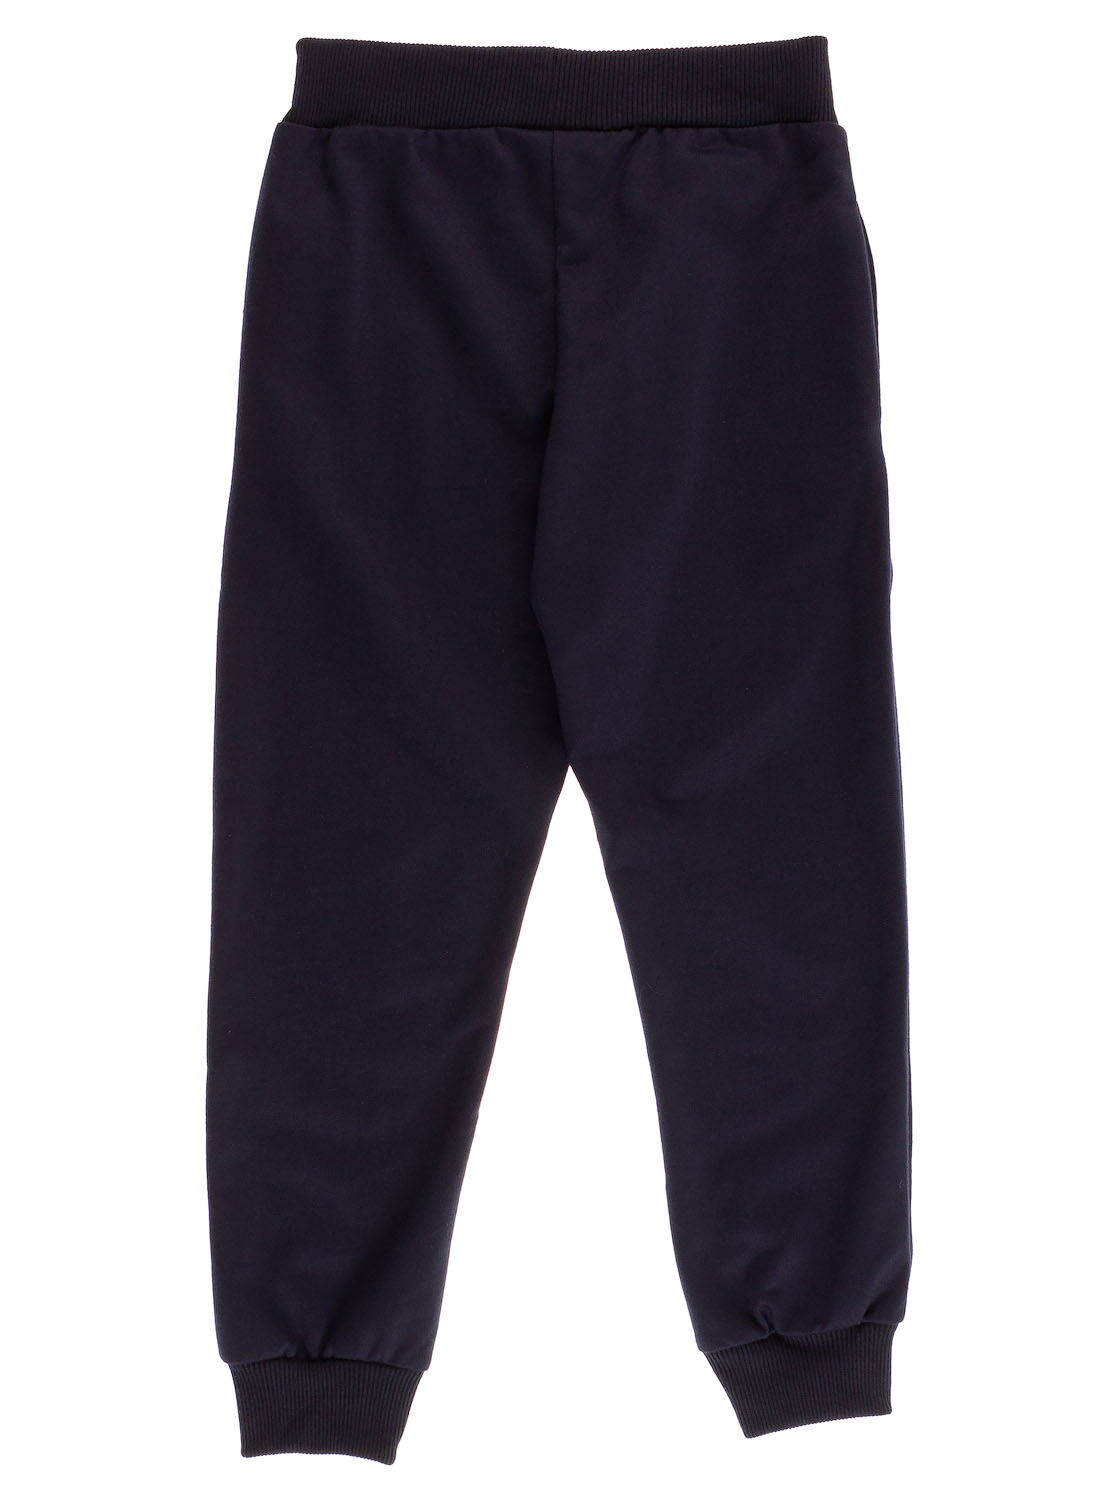 Спортивные штаны для мальчика Sincere темно-синие 2308 - фото